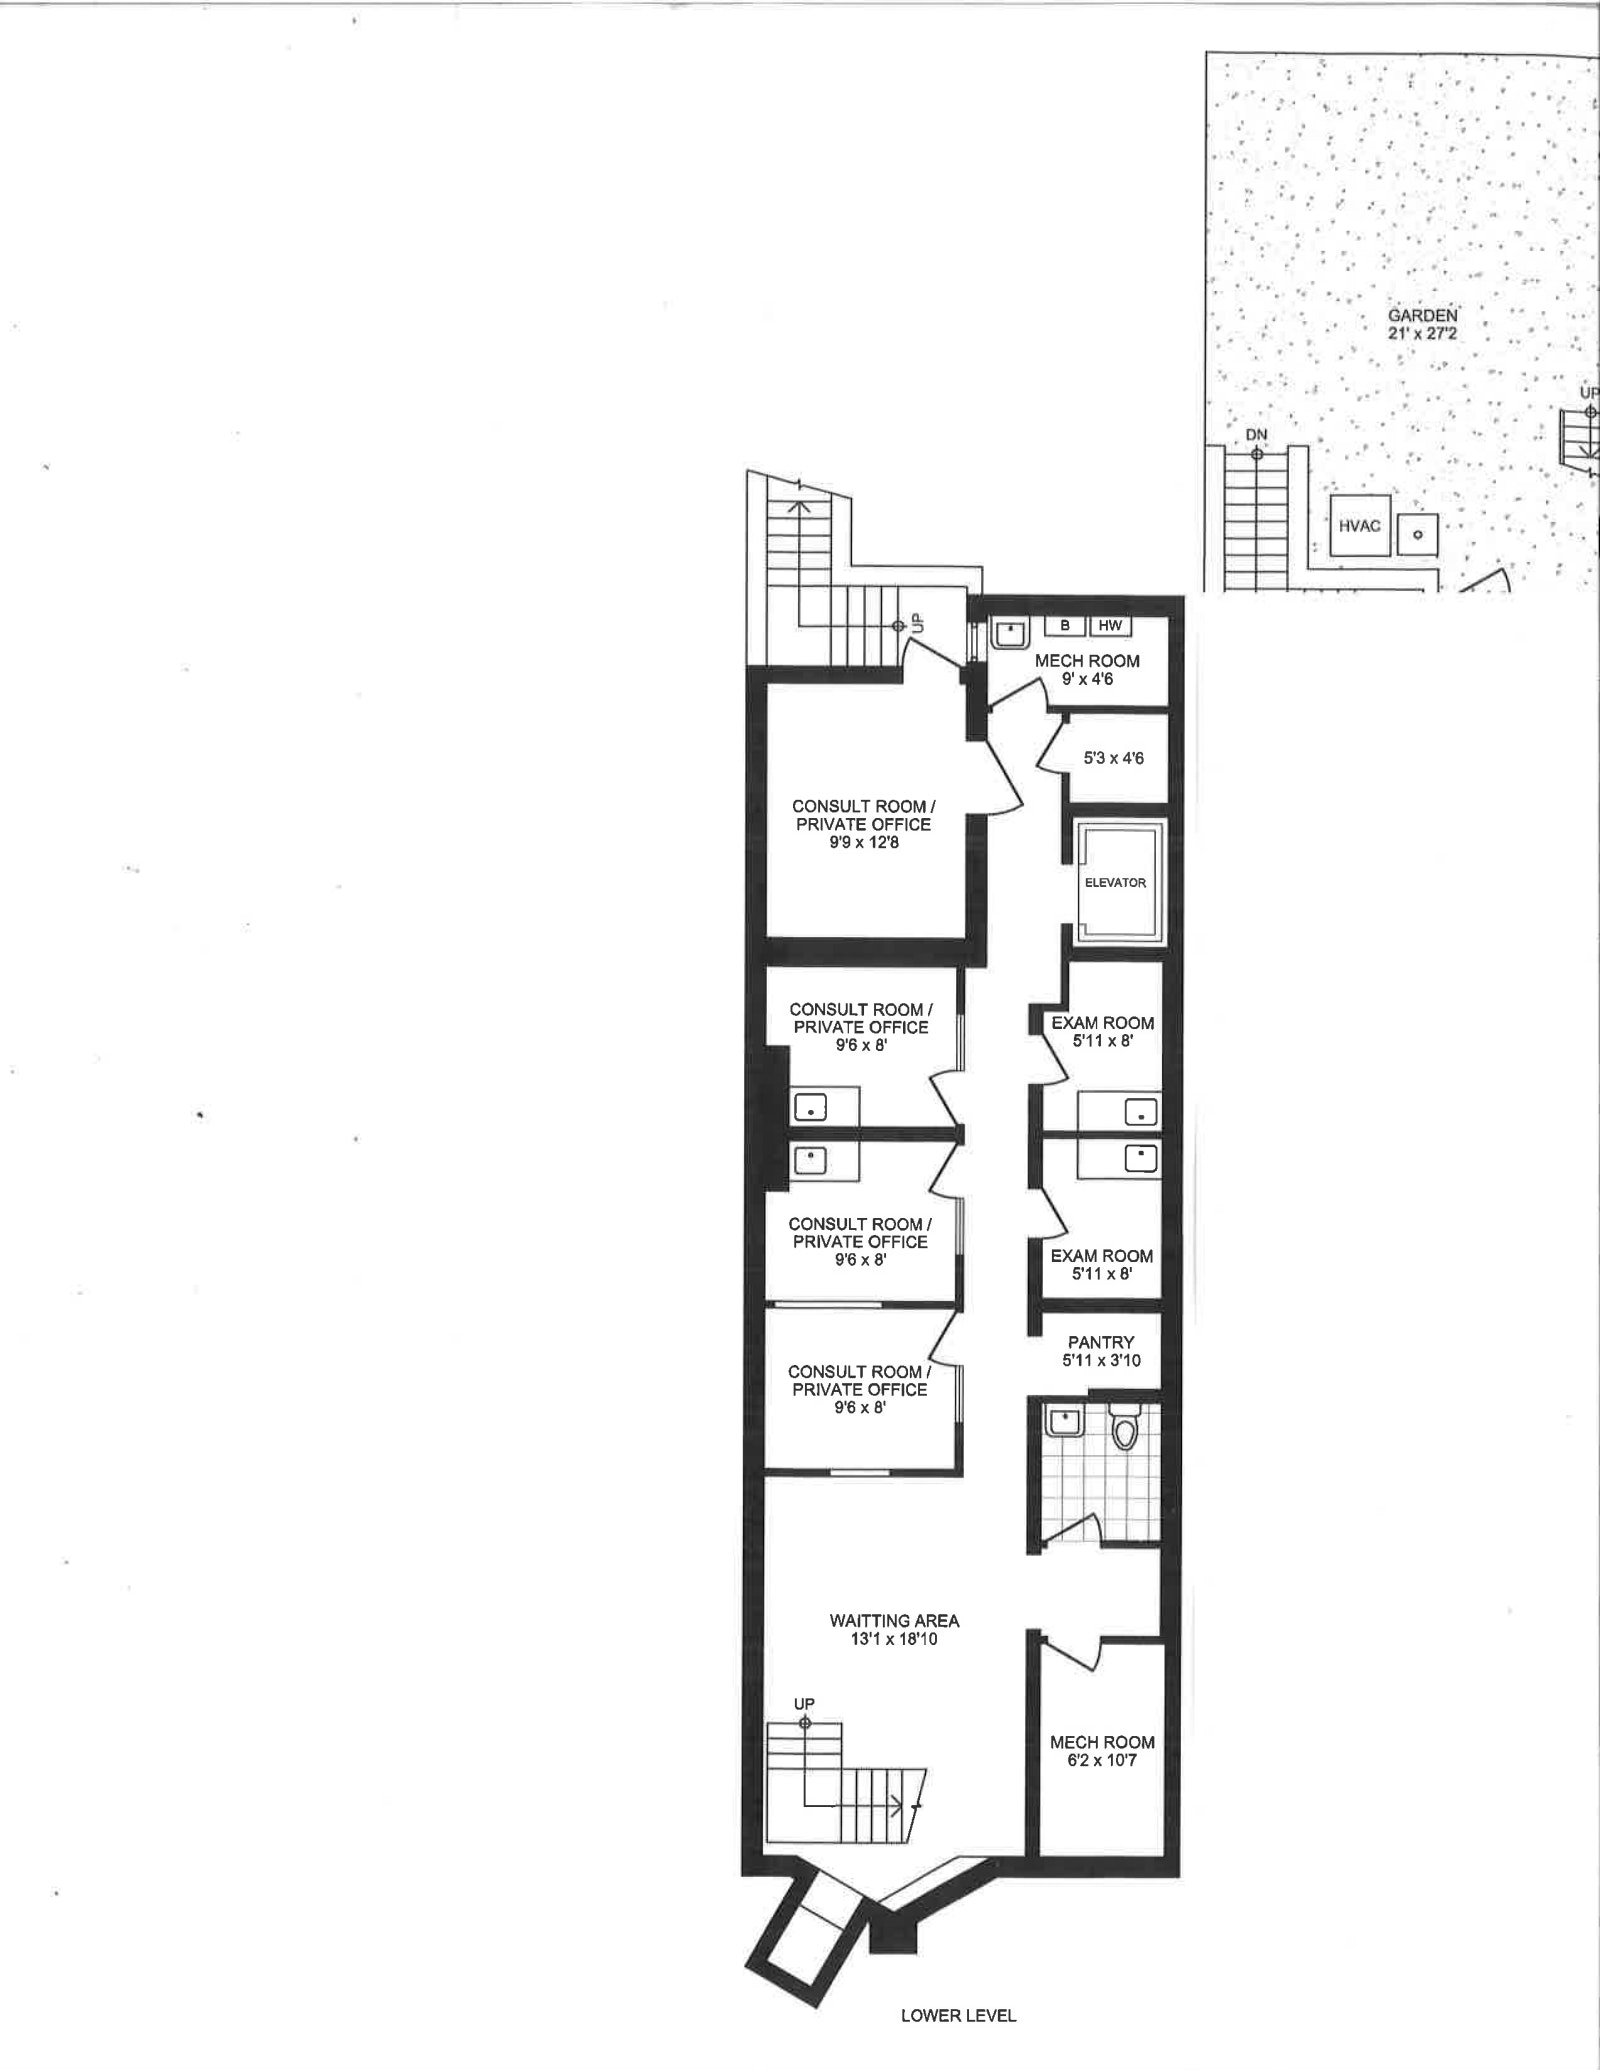 Floorplan for 207 Berkeley Pl, LOWERSUITE